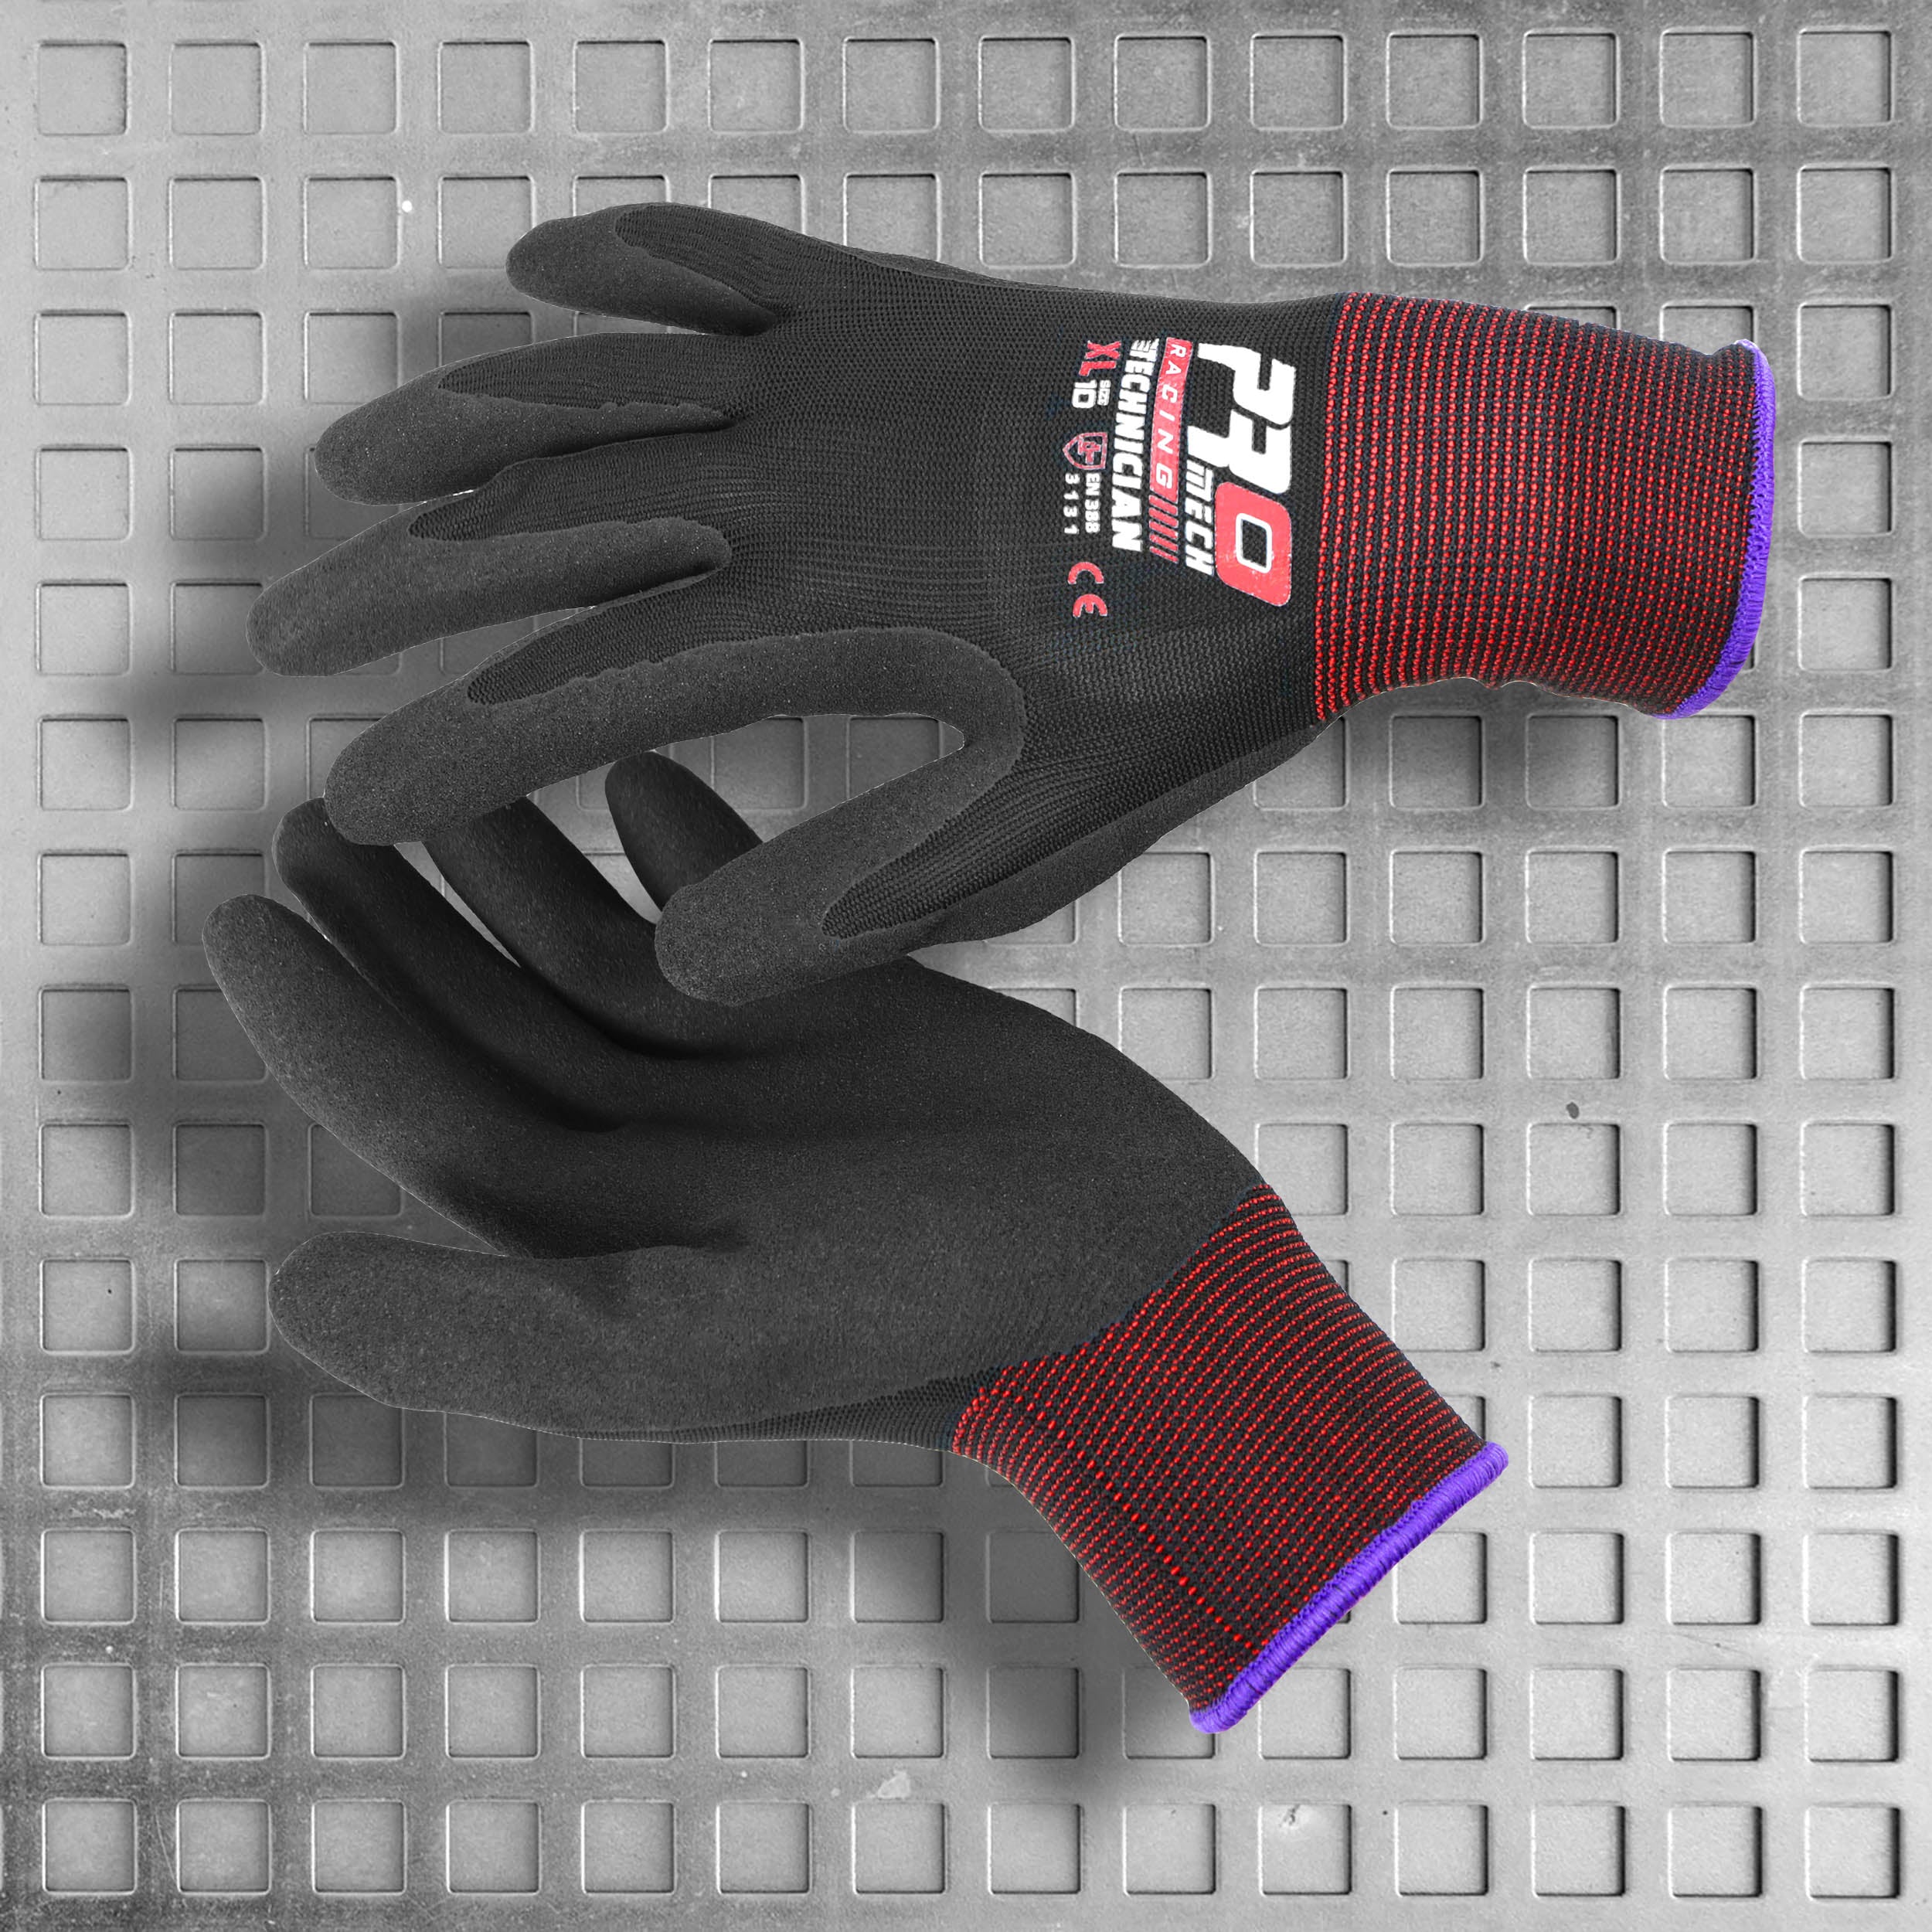 Promech Racing Technician Gloves